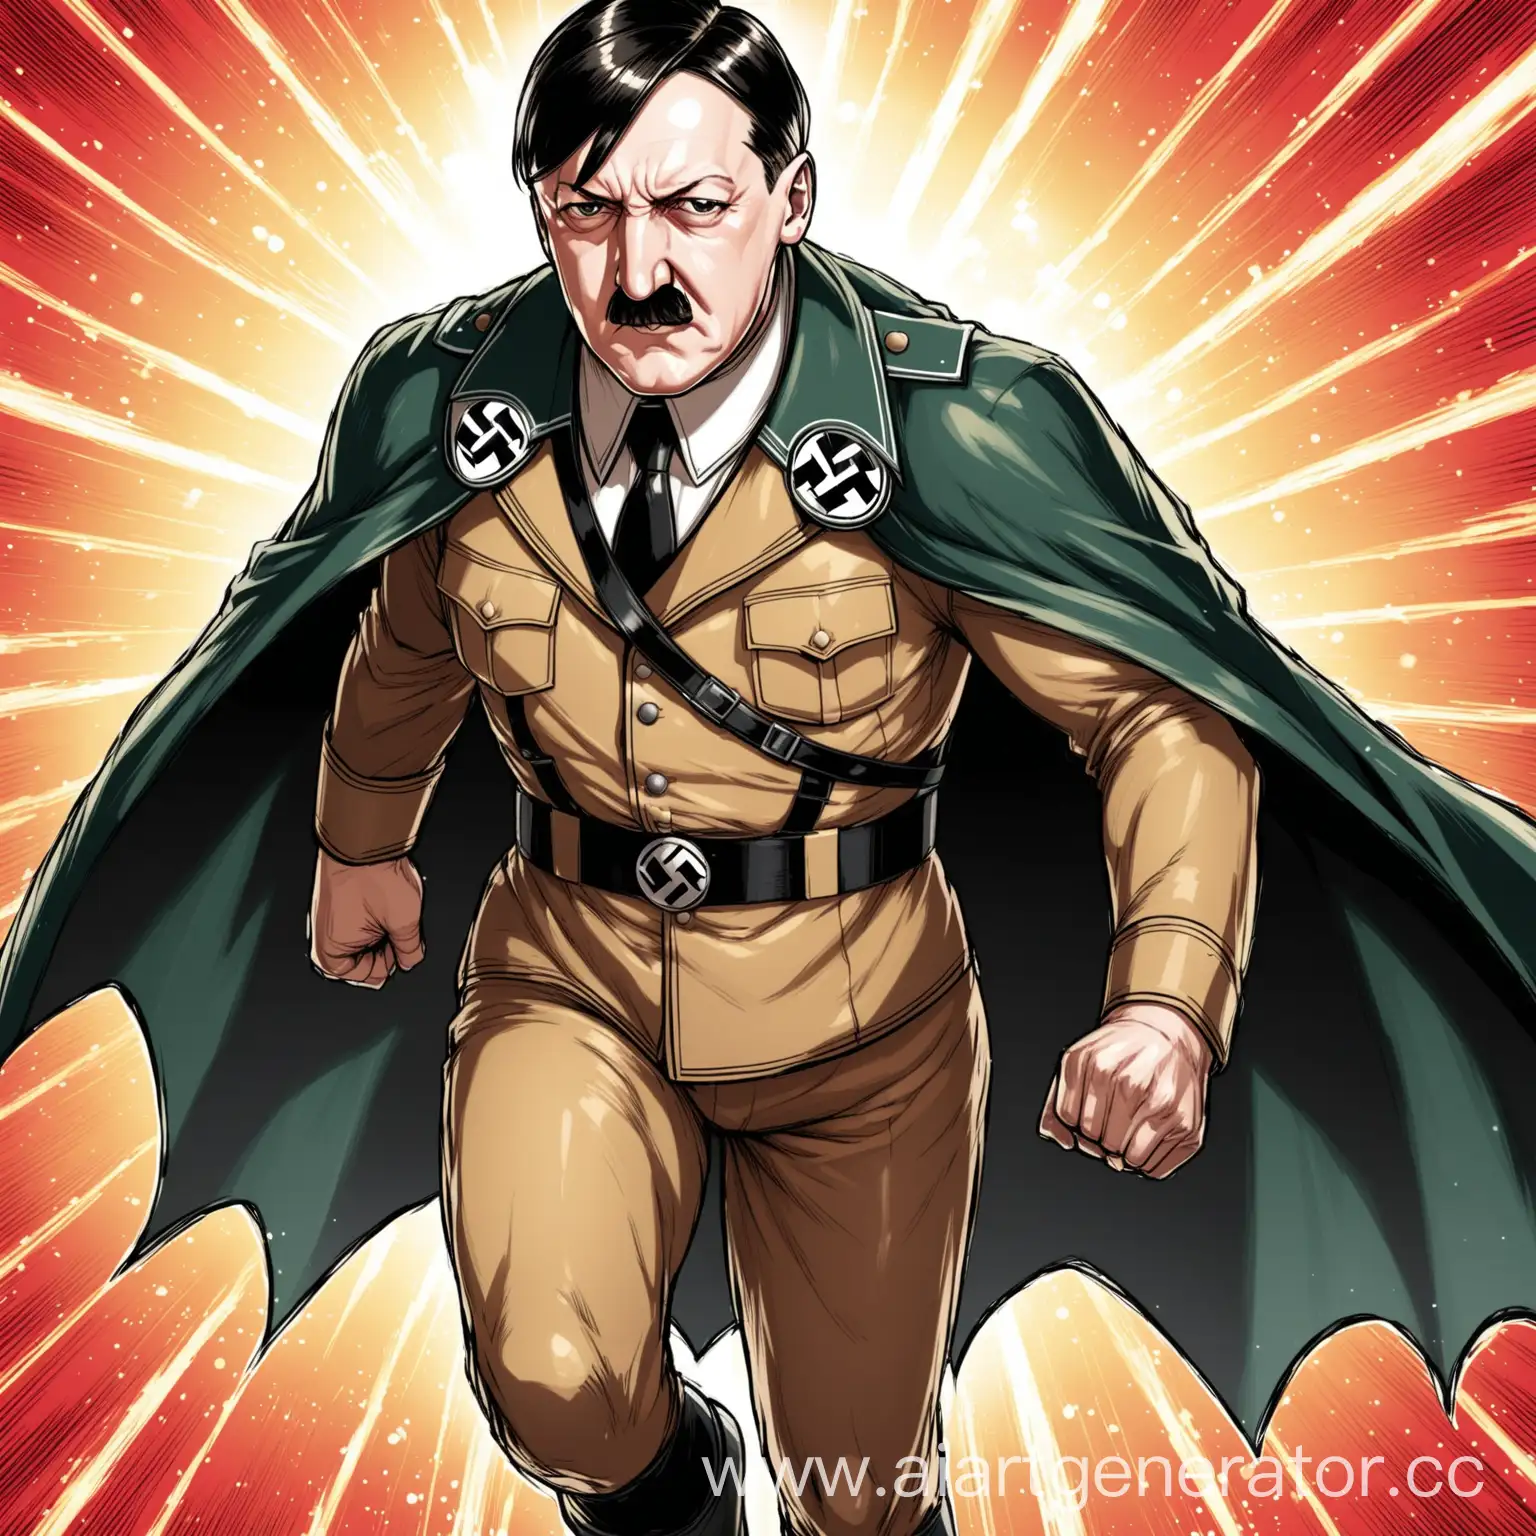 Hitler-as-a-Superhero-Defying-Evil